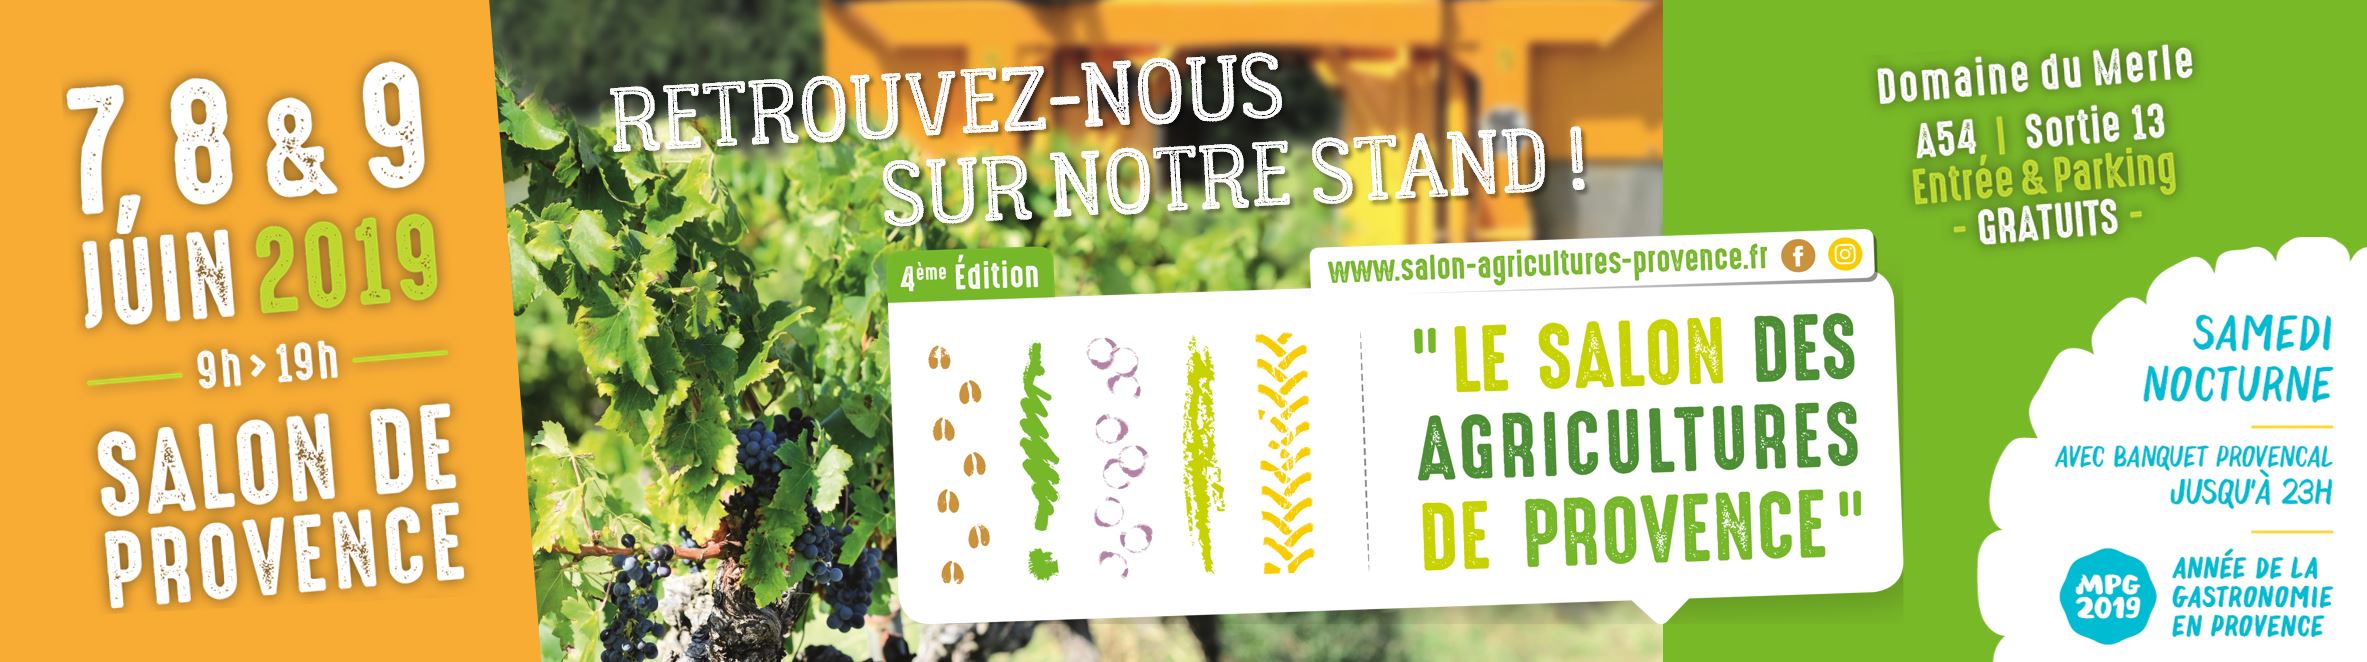 NOVA sera partenaire du Salon des Agricultures de Provence les 7, 8 & 9 juin au Domaine du Merle à Salon de Provence